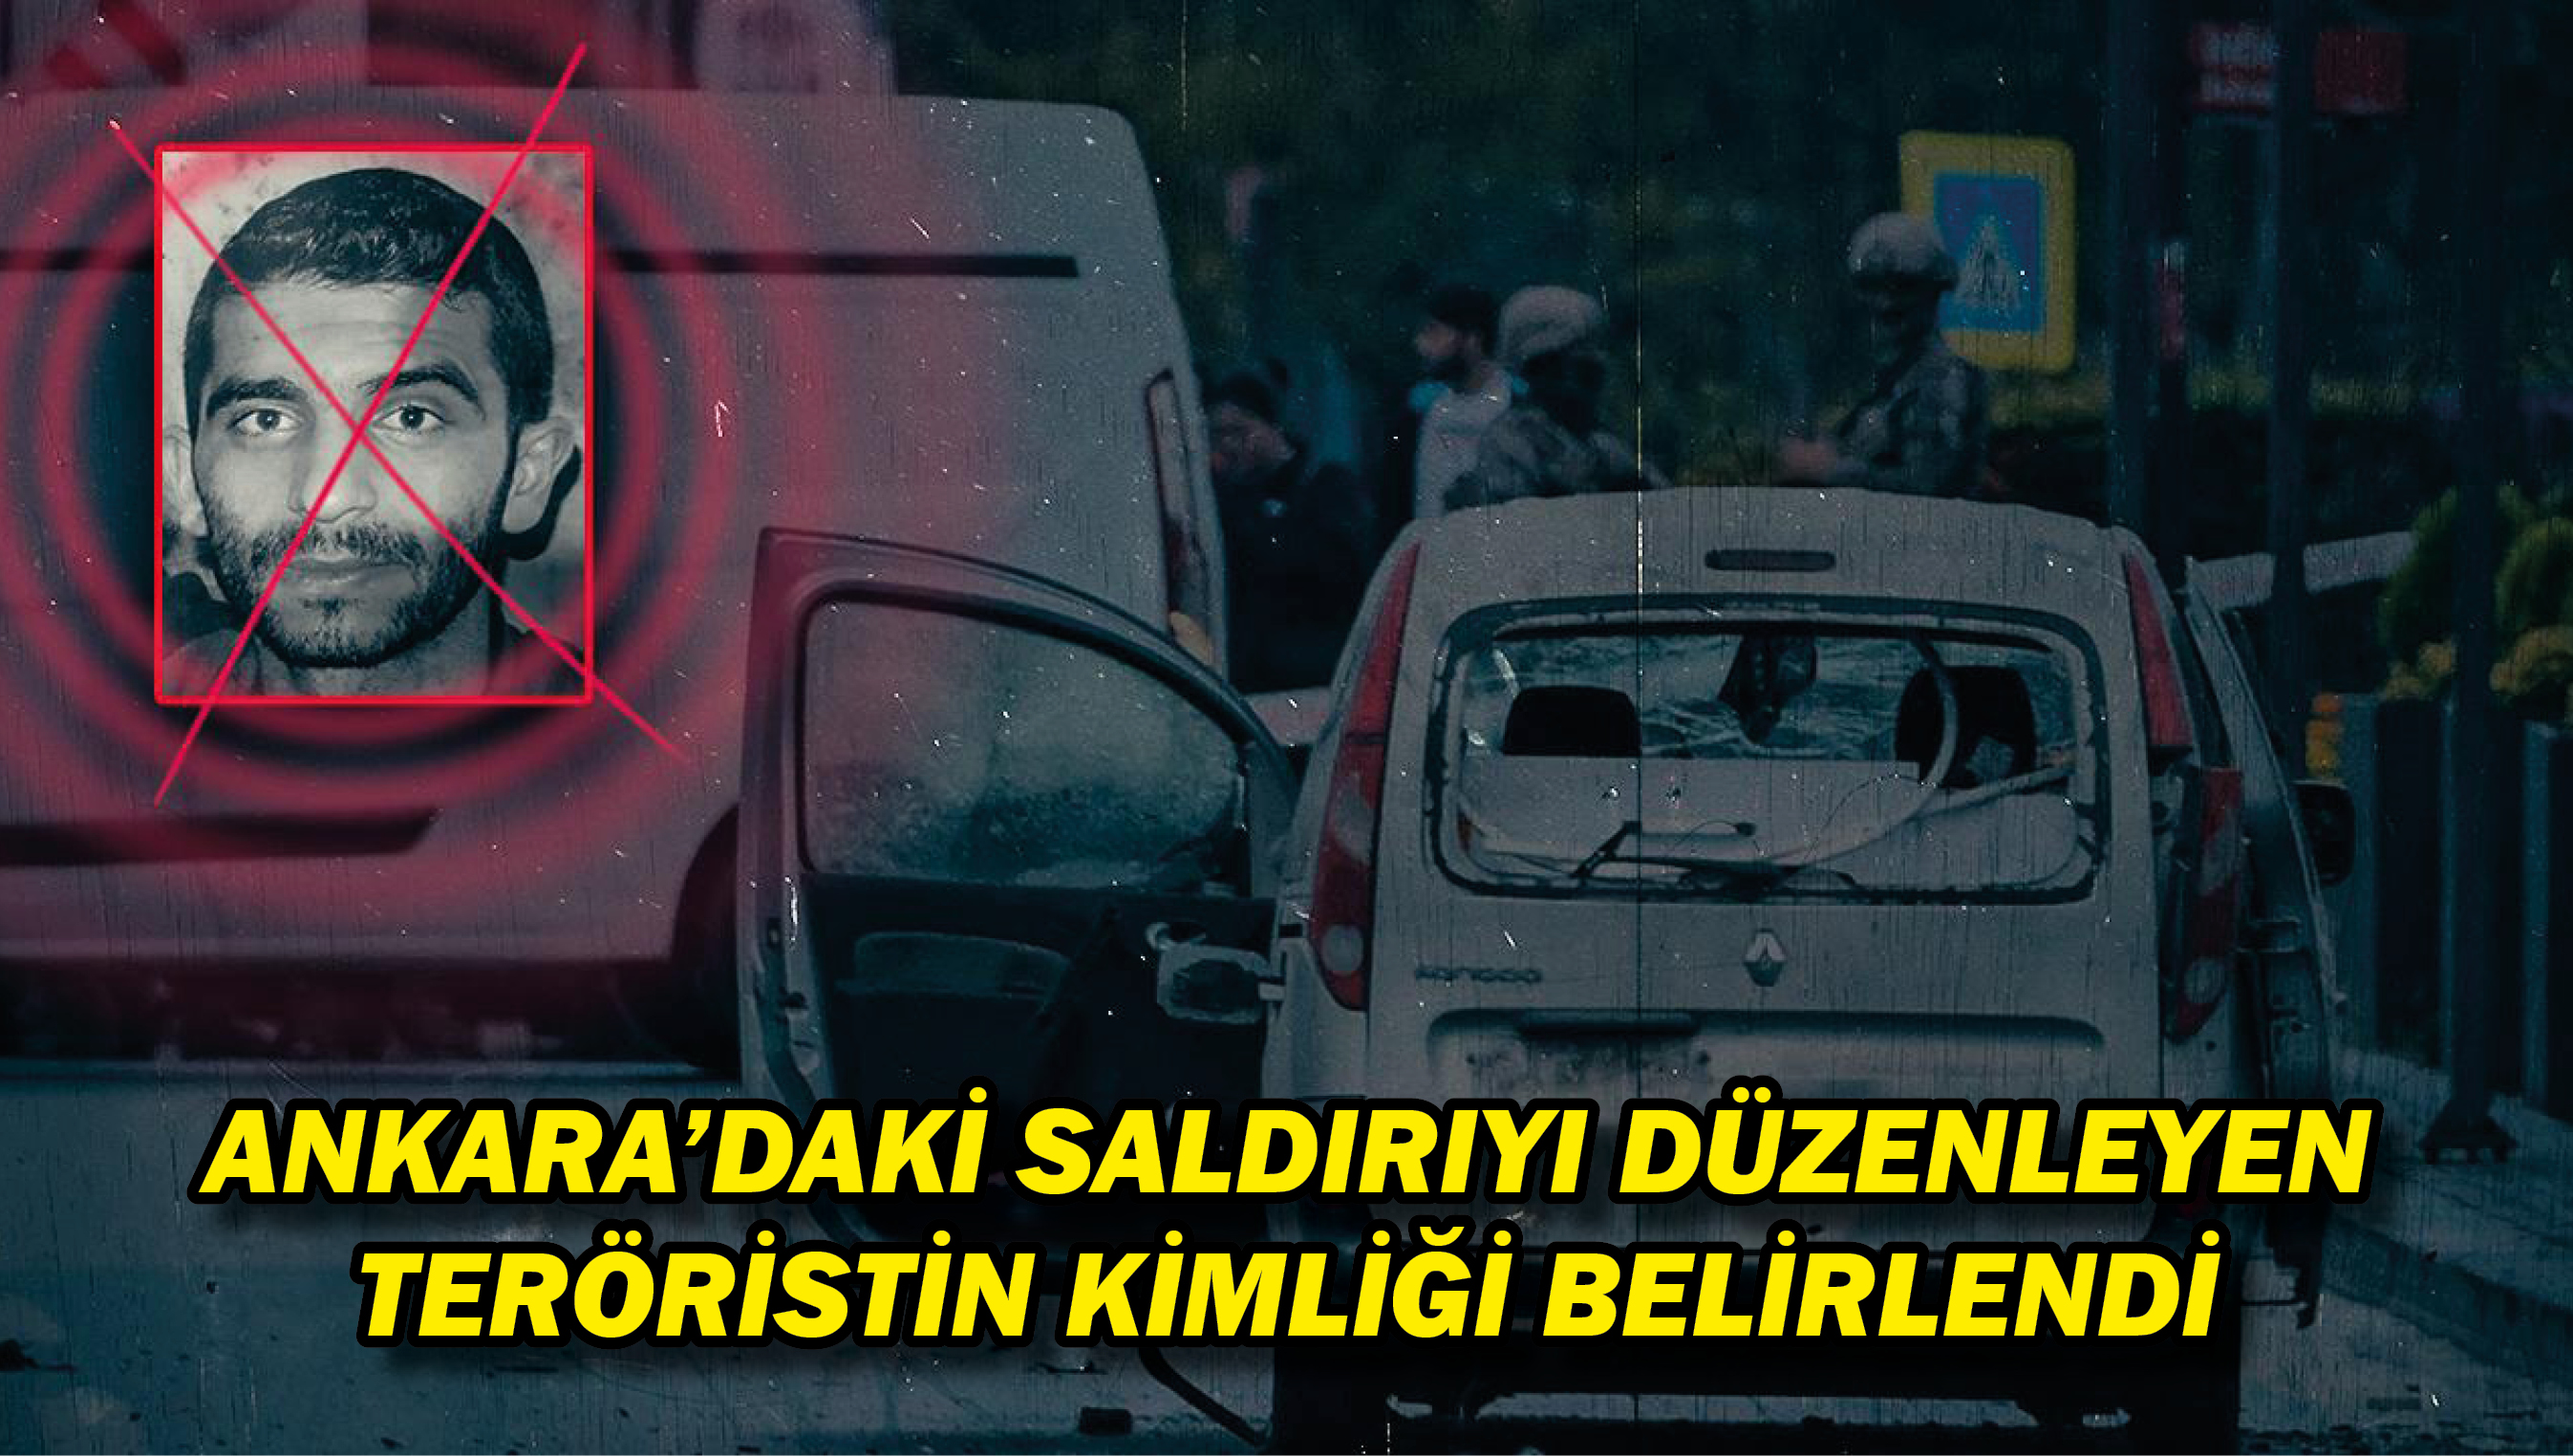 Ankara'daki saldırıyı düzenleyen teröristin kimliği belirlendi